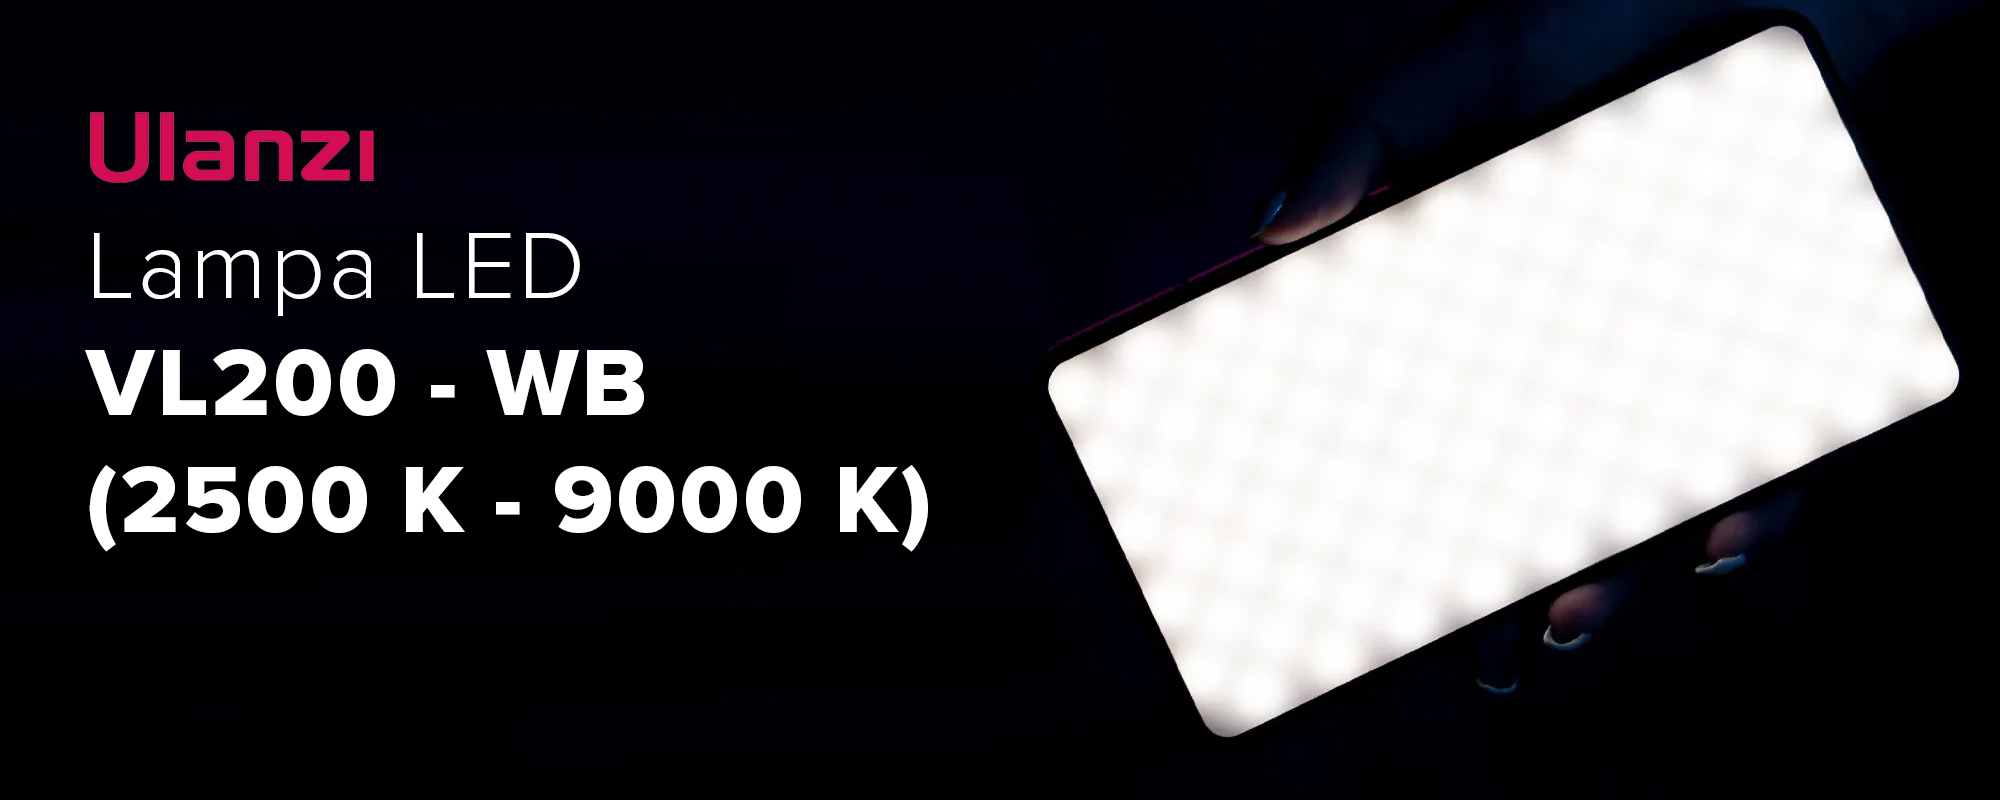 Lampa LED Ulanzi VL49 - WB (2700 - 5500 K)